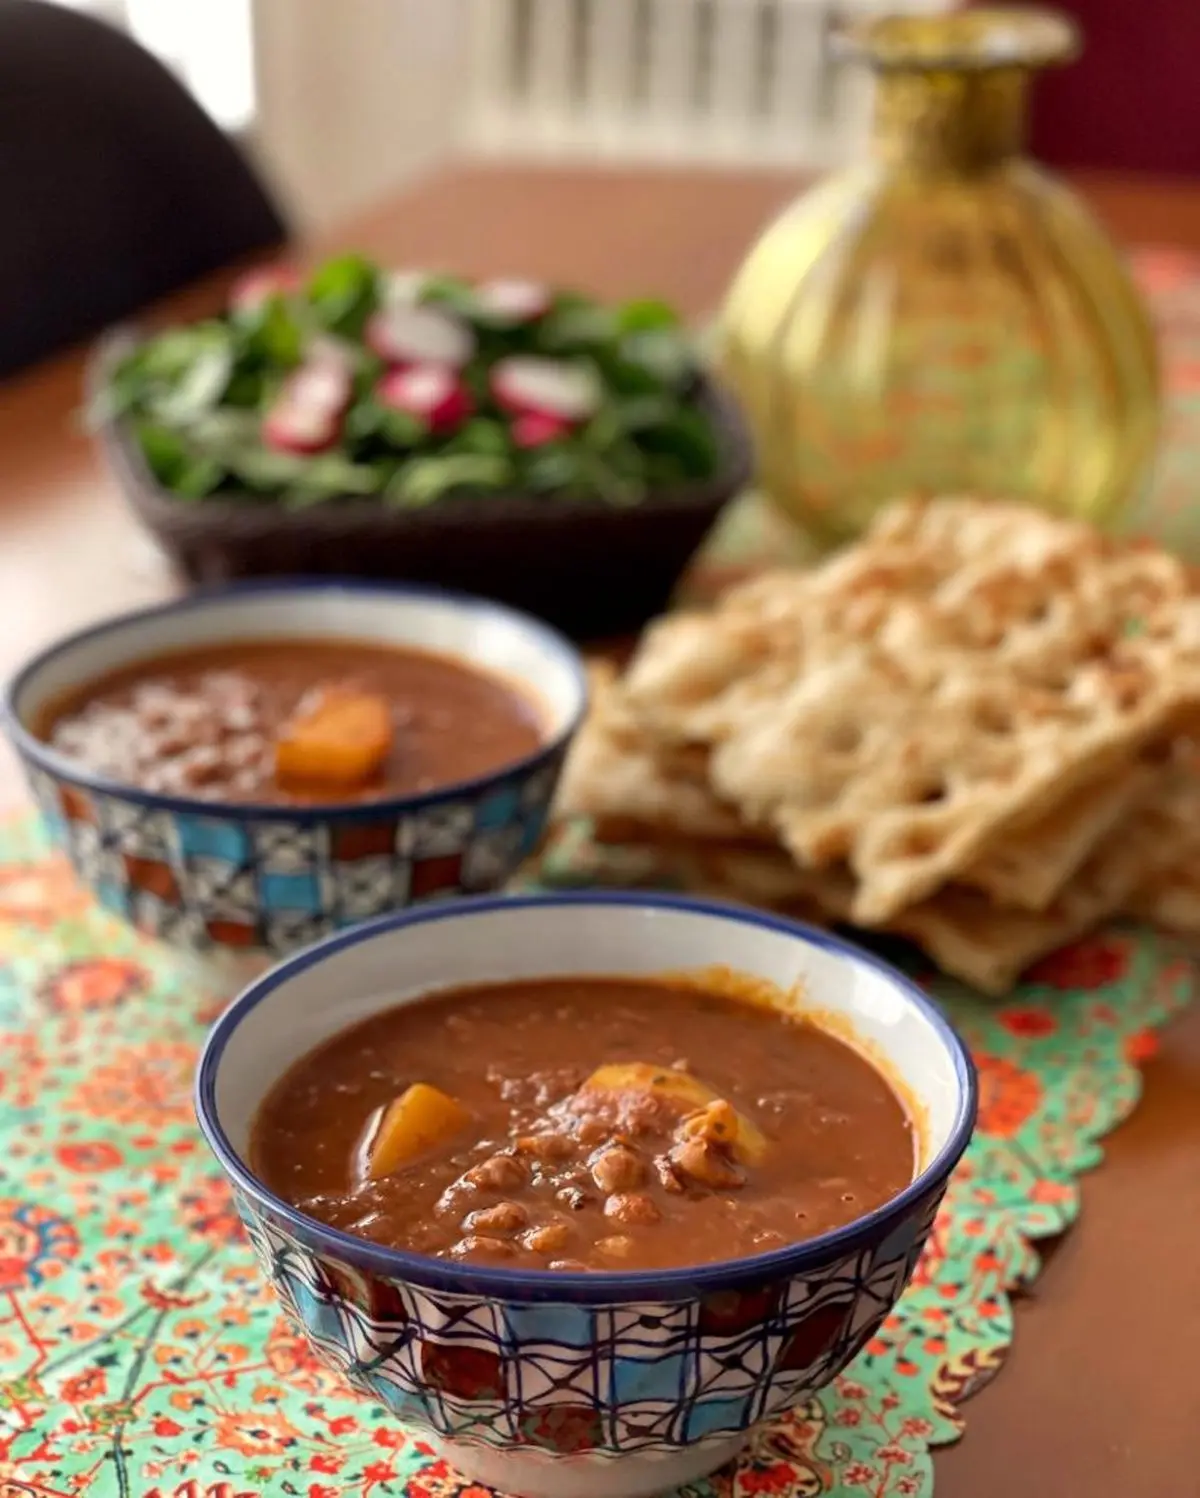 آبگوشت اصیل کرمانی | غذای پرطرفدار ایرانی!